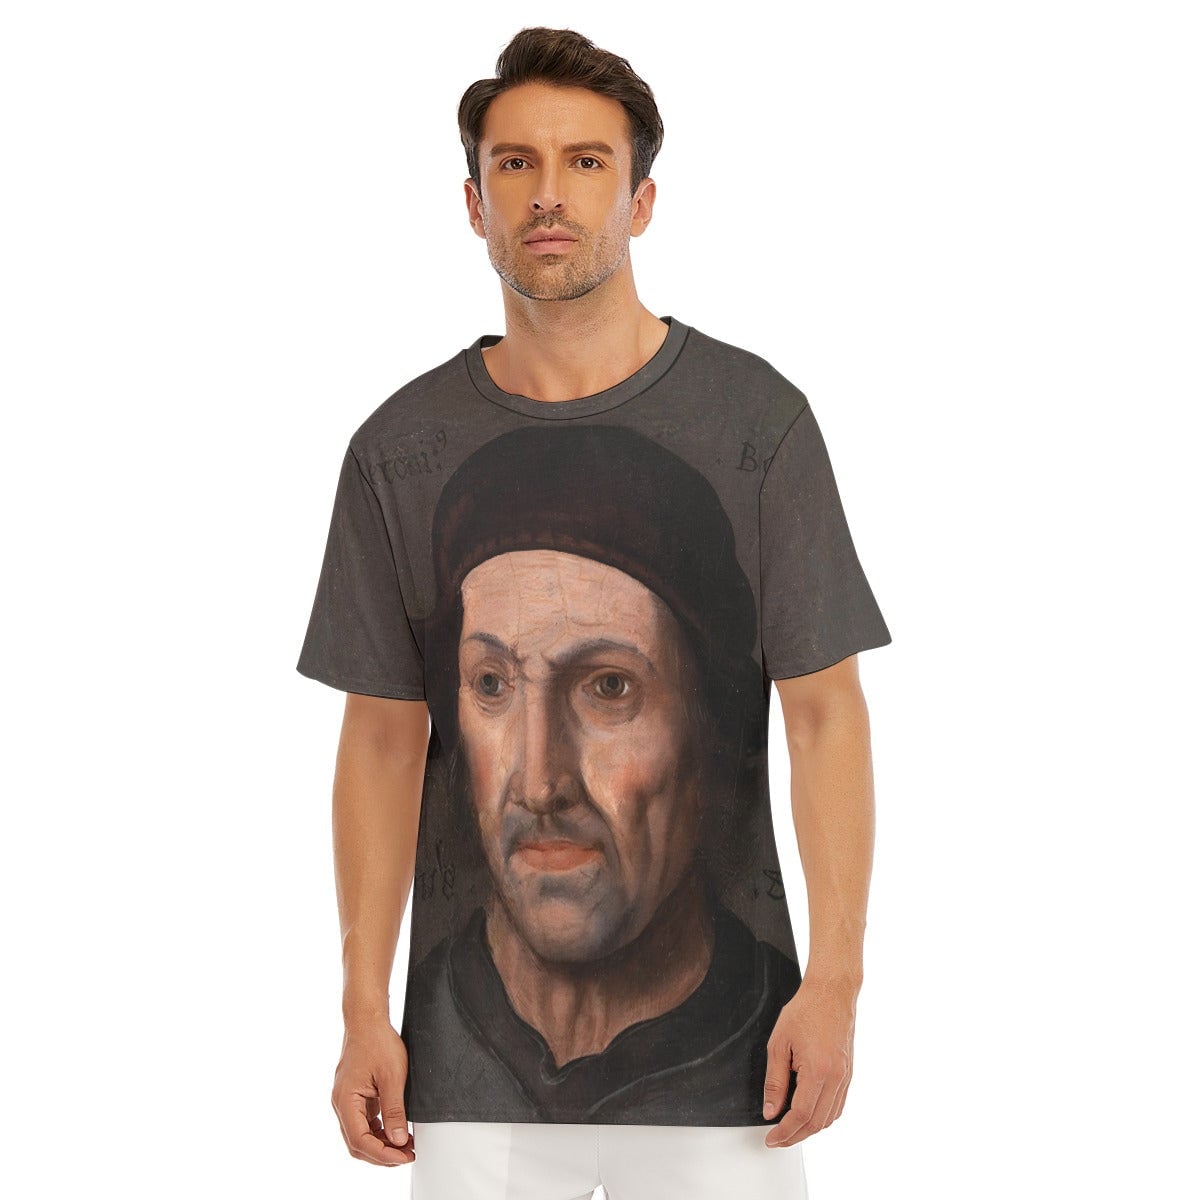 Hieronymus Bosch Portrait T-Shirt